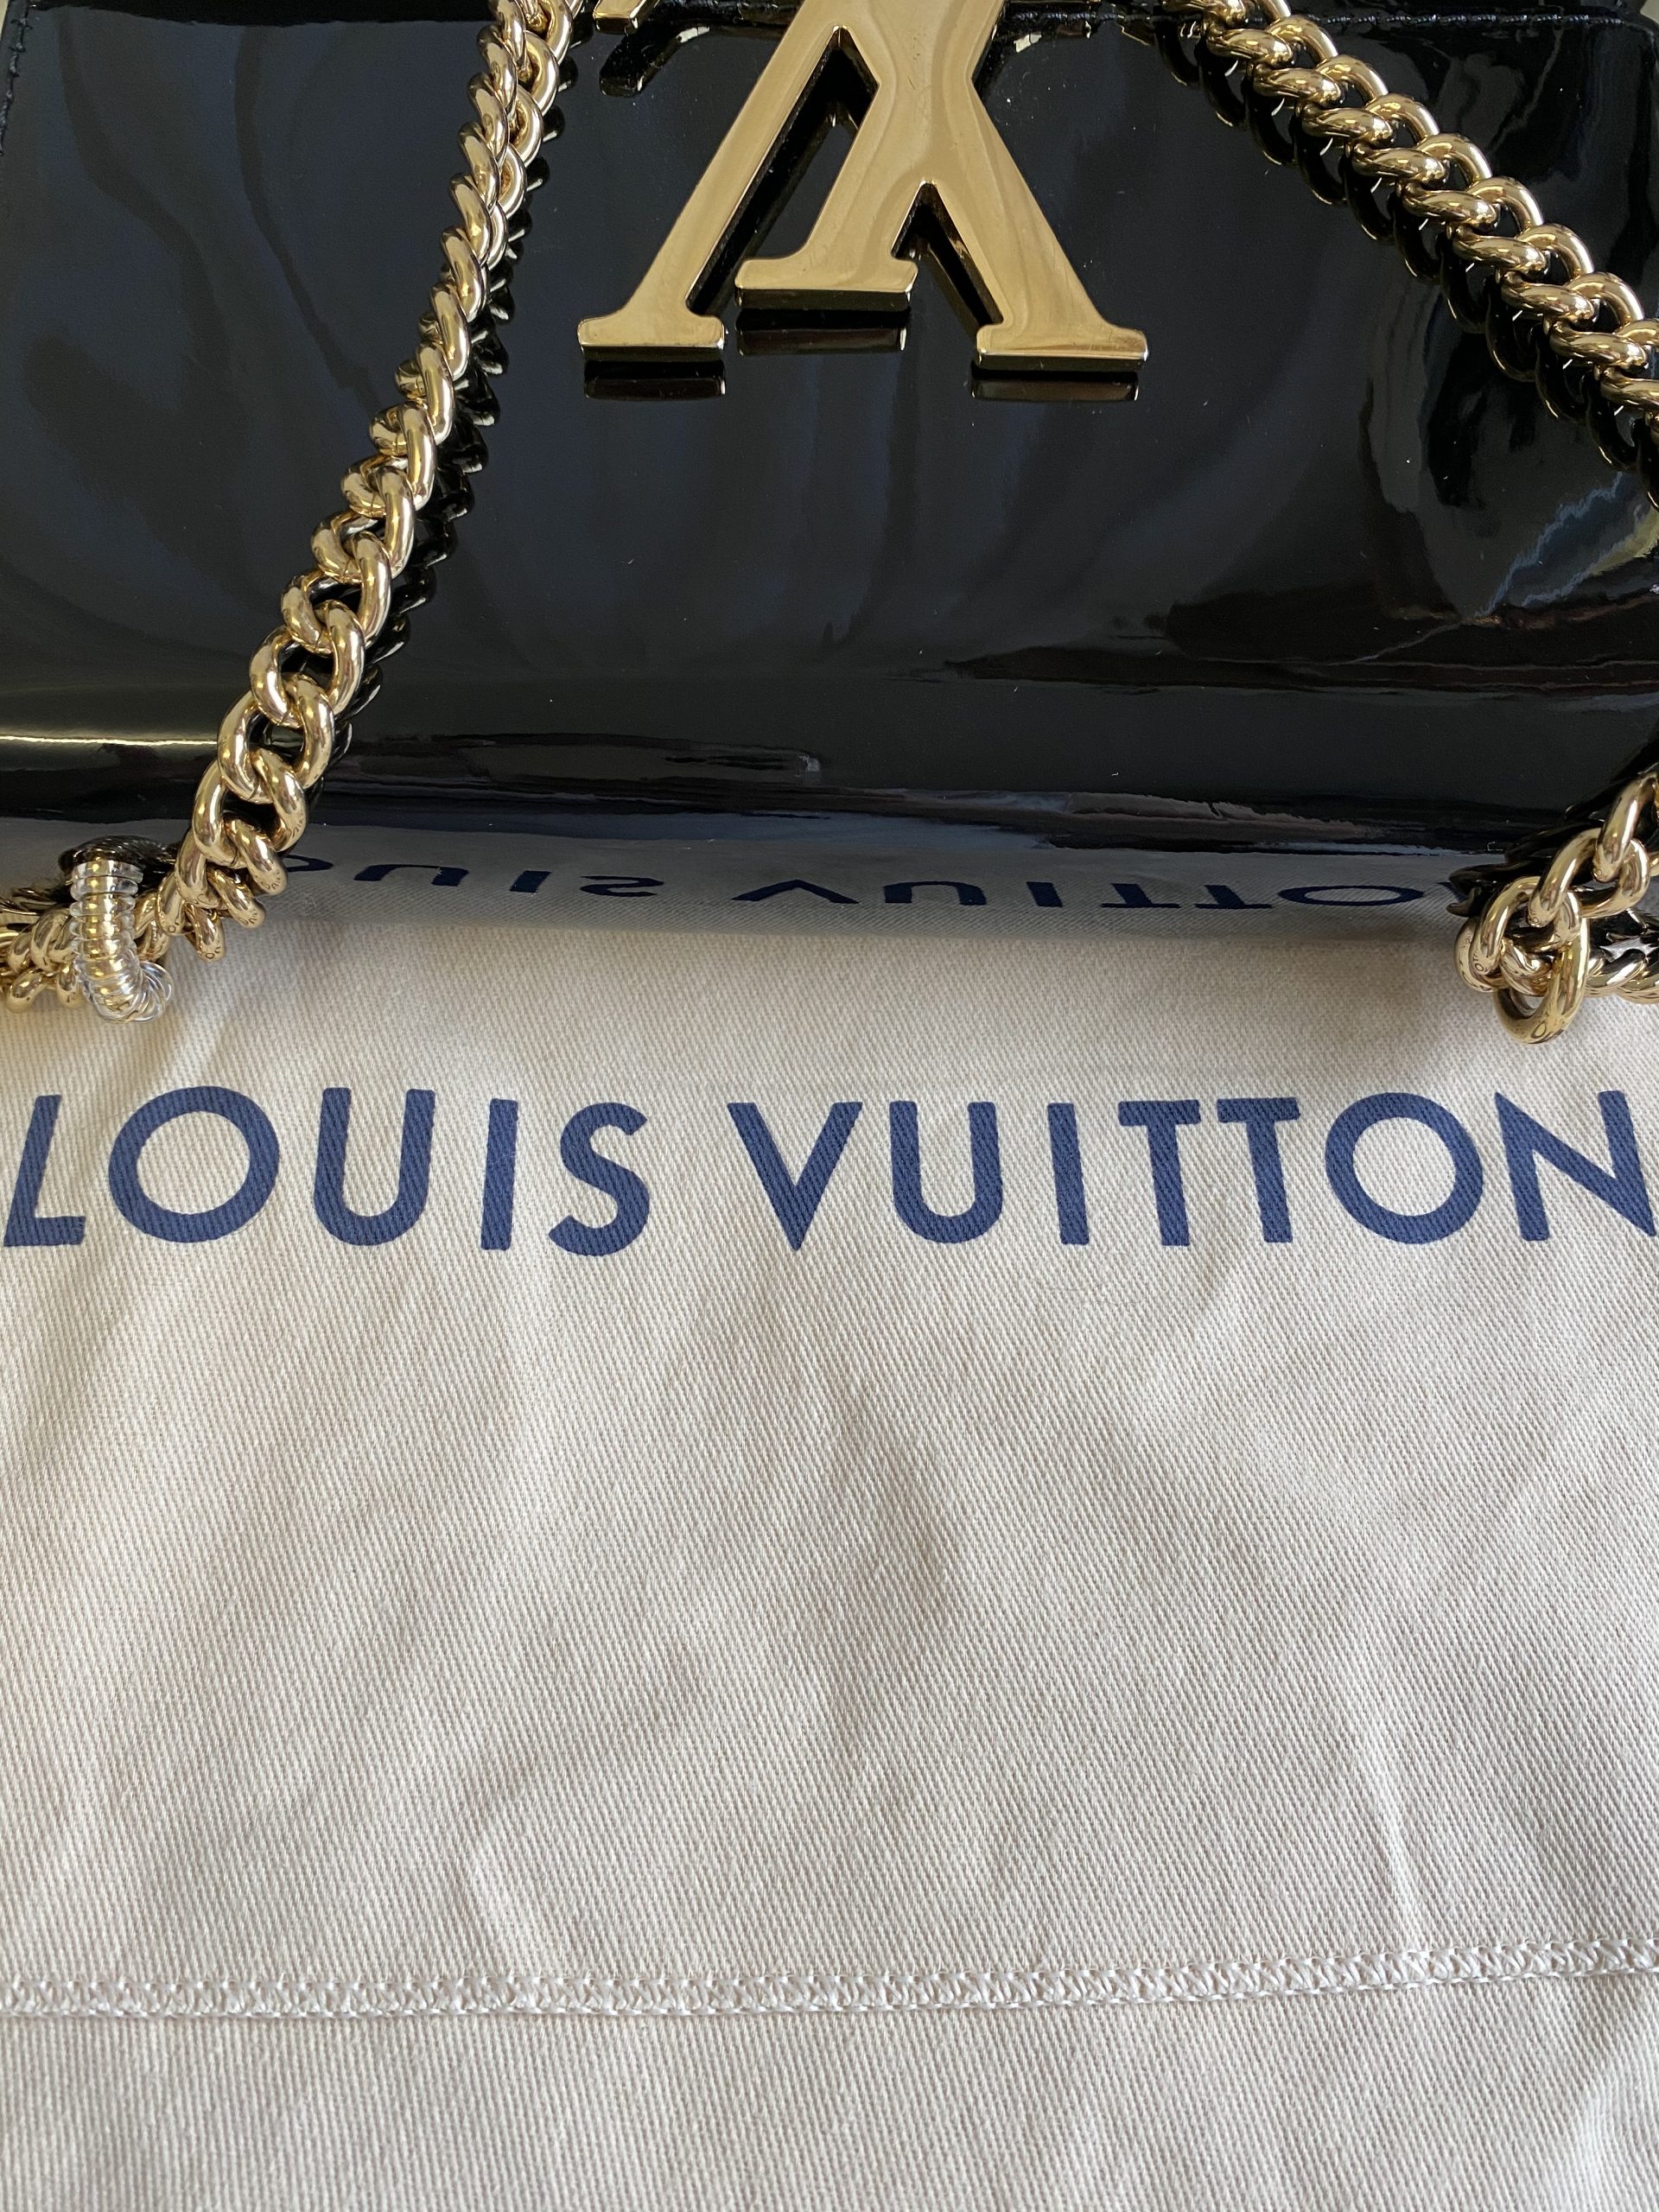 LOUIS VUITTON Patent Louise MM Chain Bag - Black/Gold - Adorn